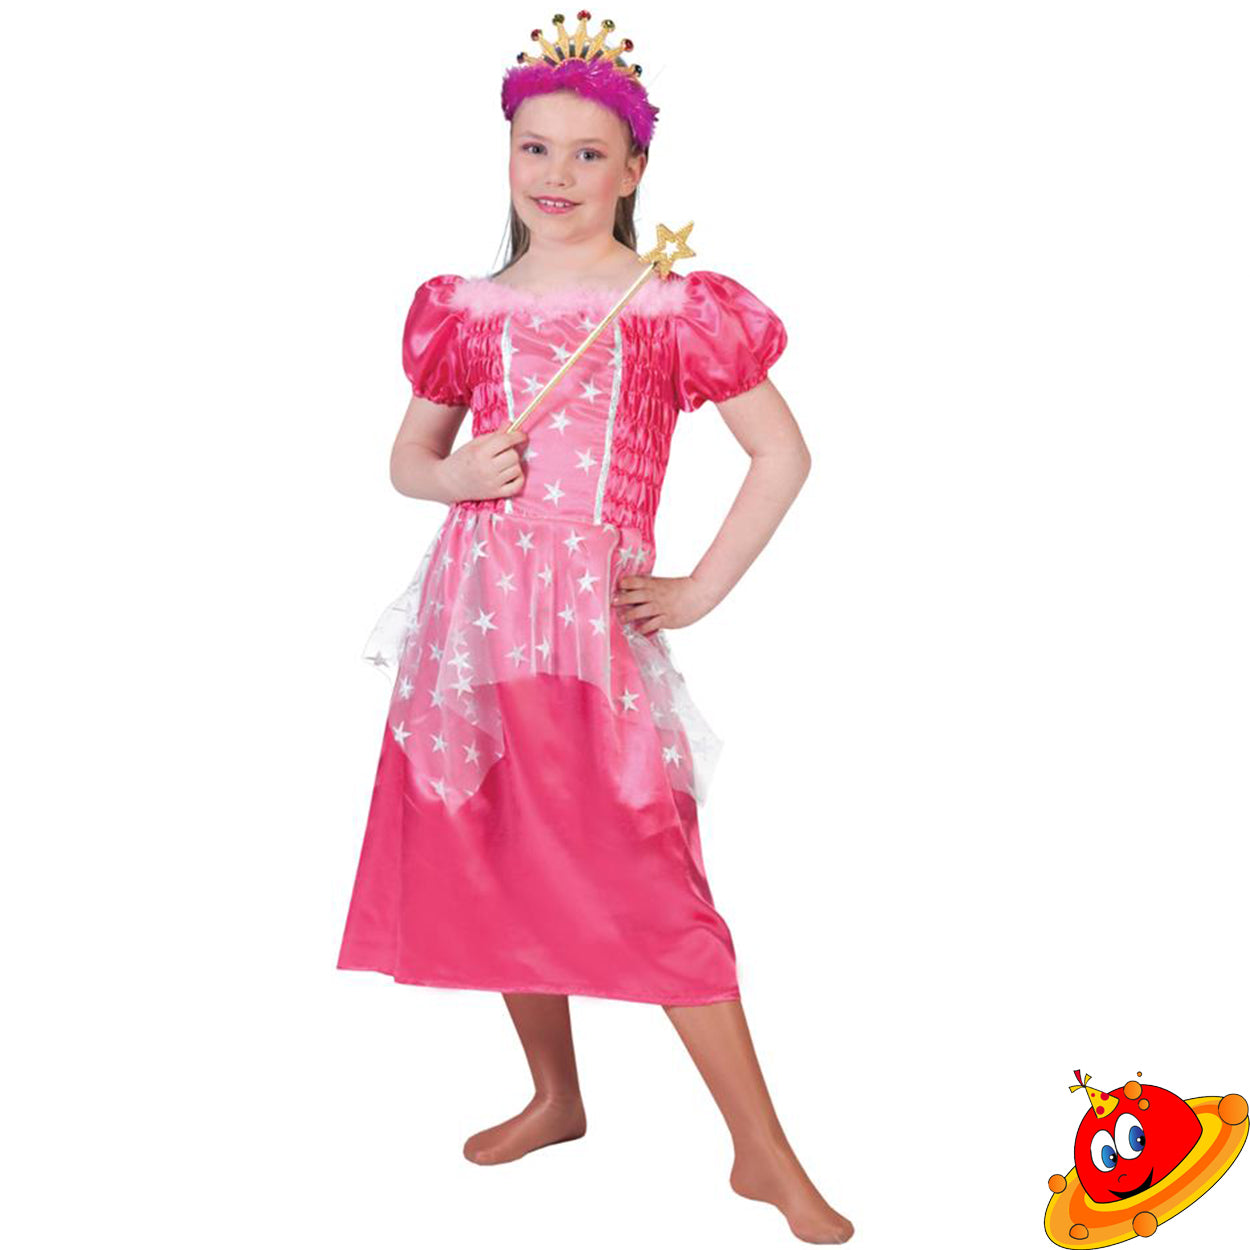 Costume Bambina Elfa Fata dei boschi Tg 3/5A – Universo In Festa